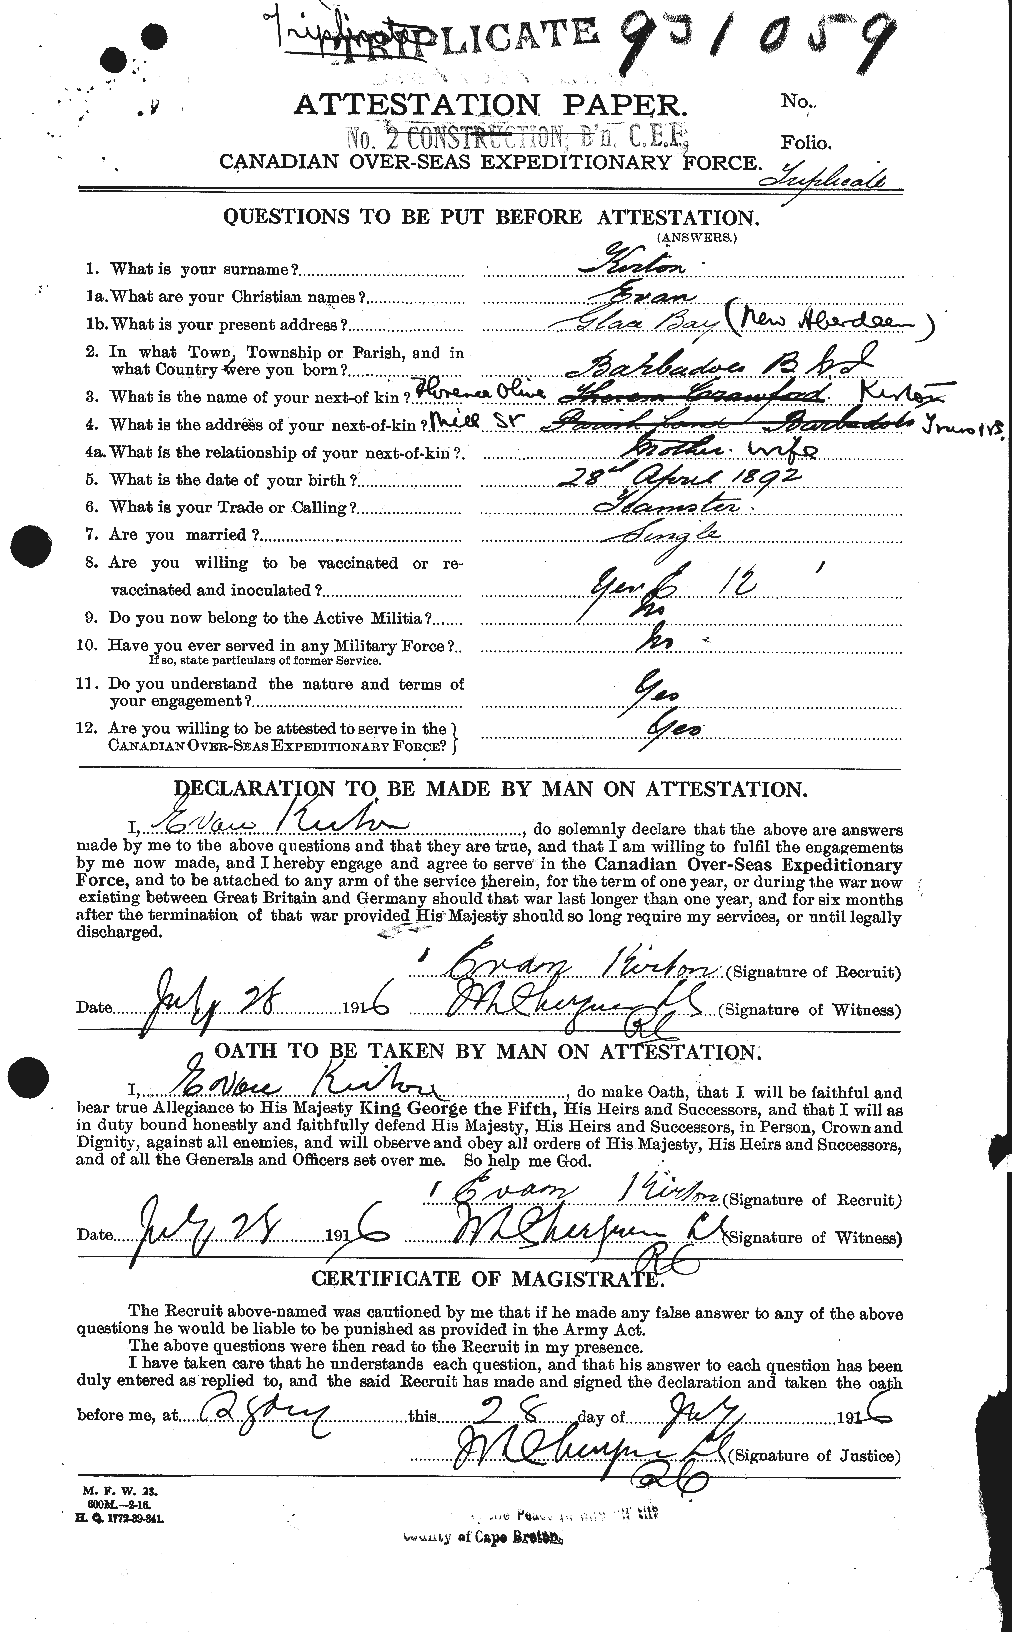 Dossiers du Personnel de la Première Guerre mondiale - CEC 436274a